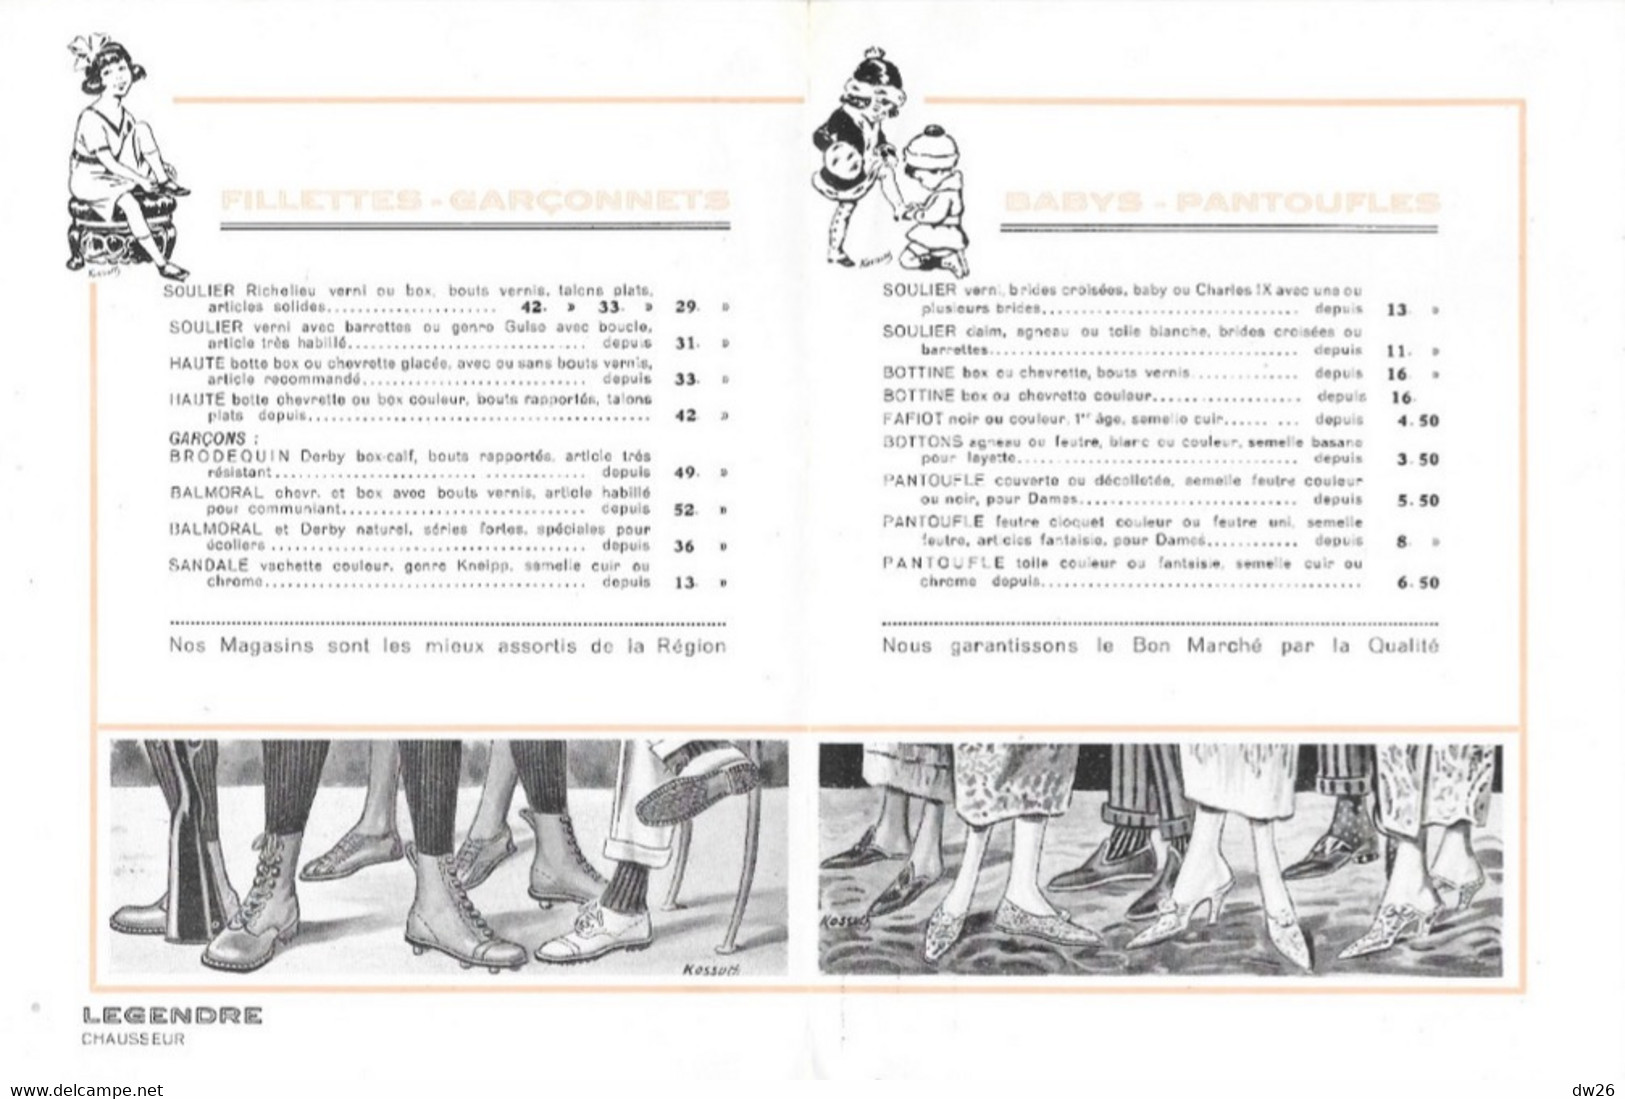 Les Dernières Créations De La Mode - Catalogue Les Chaussures Legendre (Chausseur) Dépliant 8 Pages - Fashion